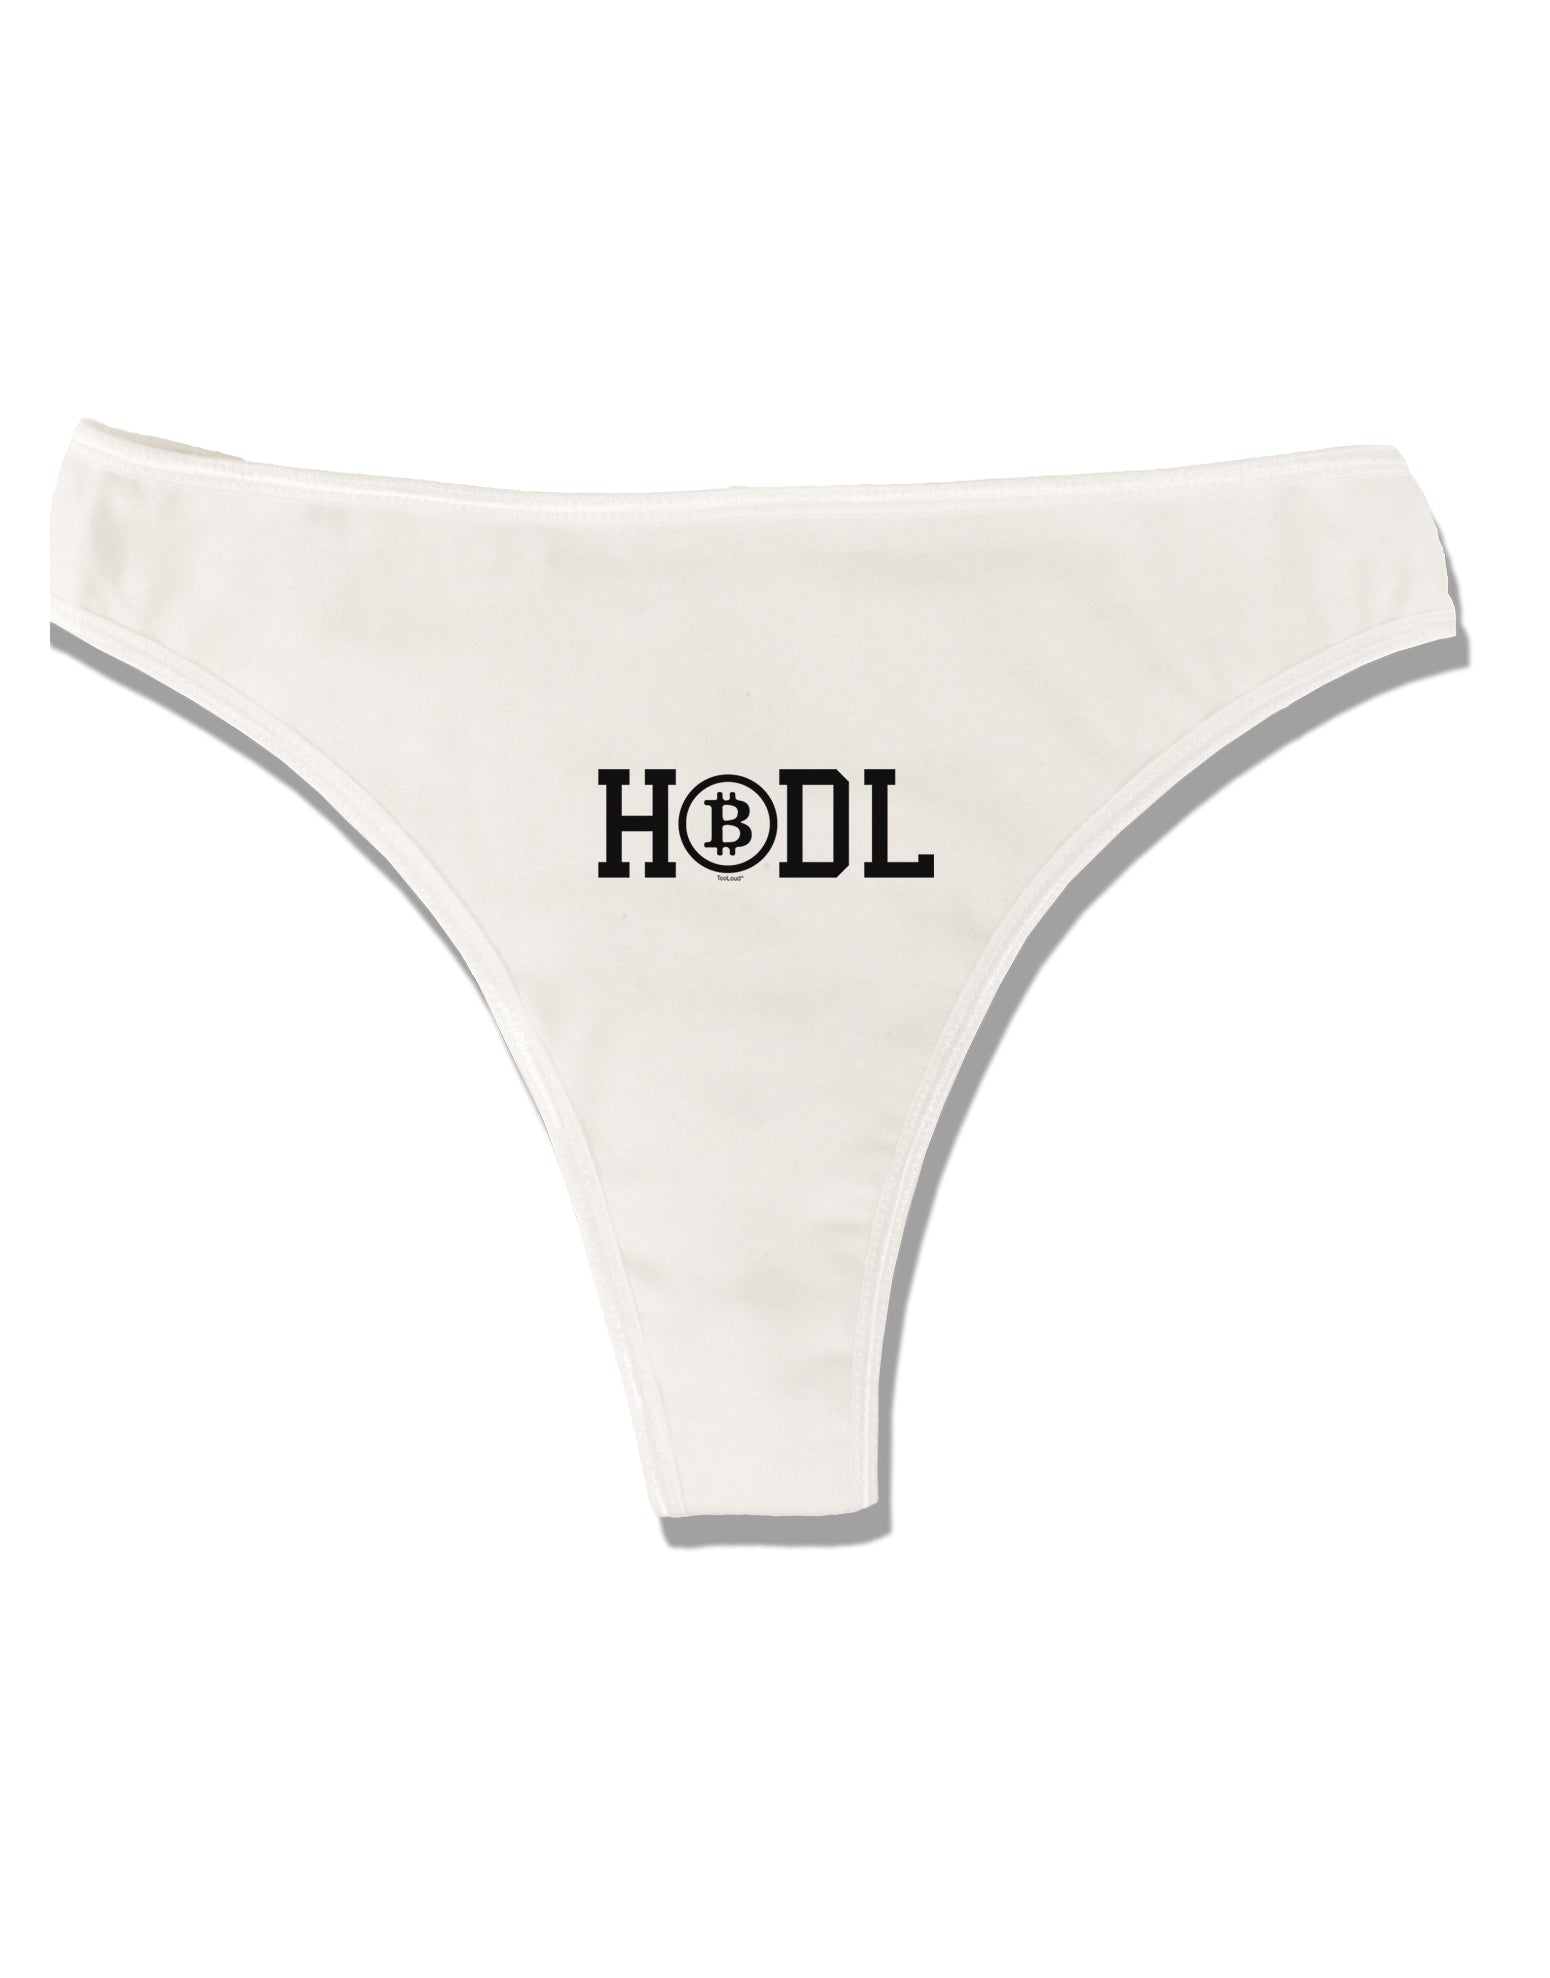 Panties For Bitcoin - HODL our Panties